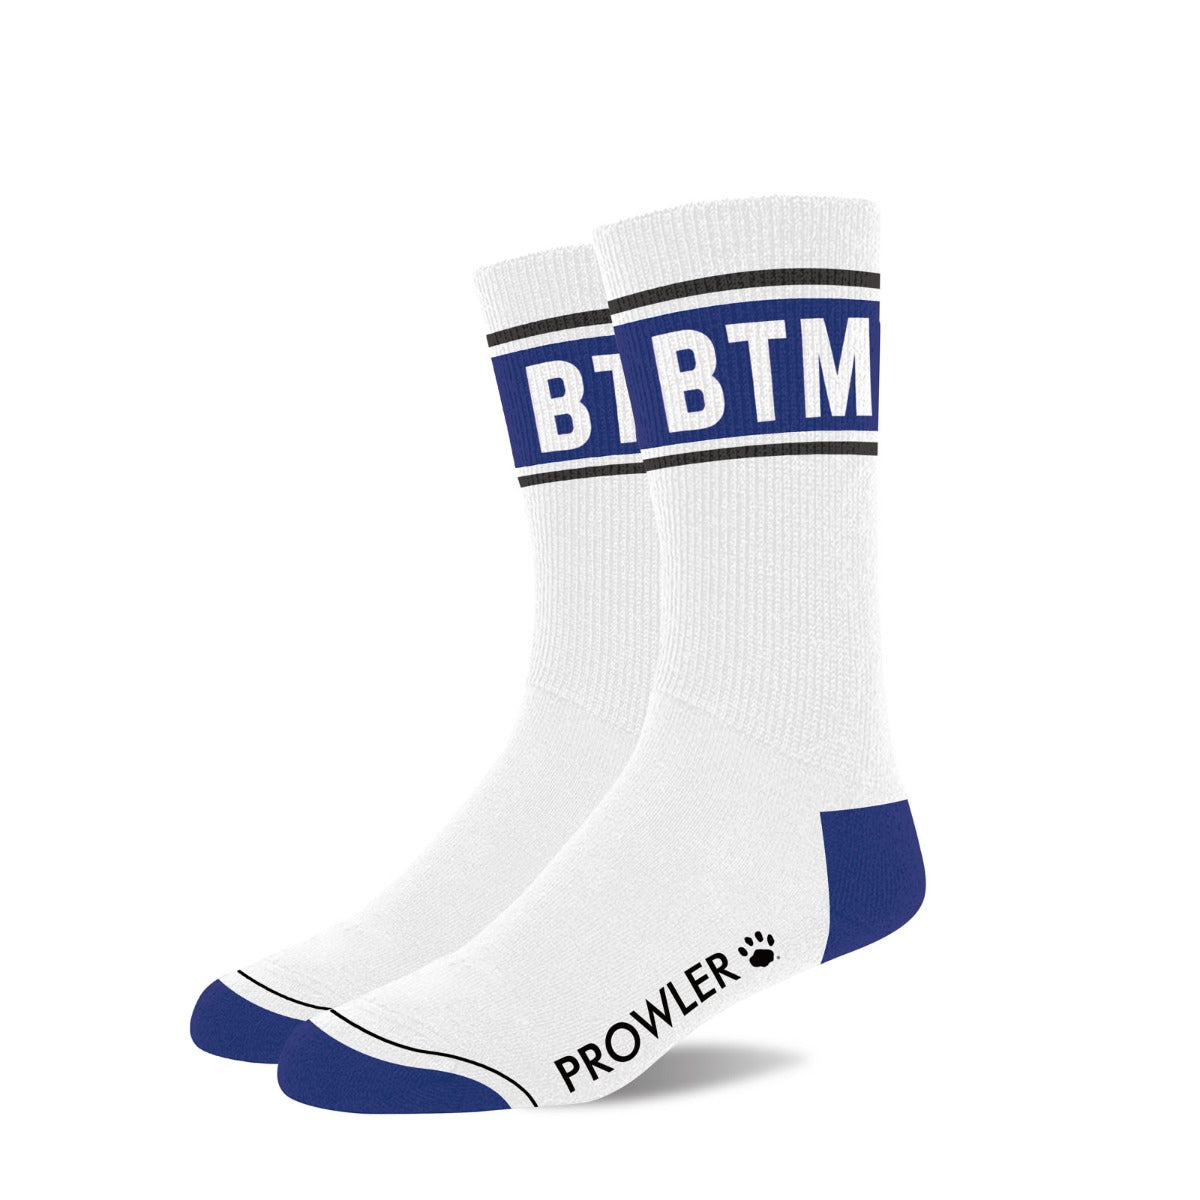 PROWLER Bottom Socks